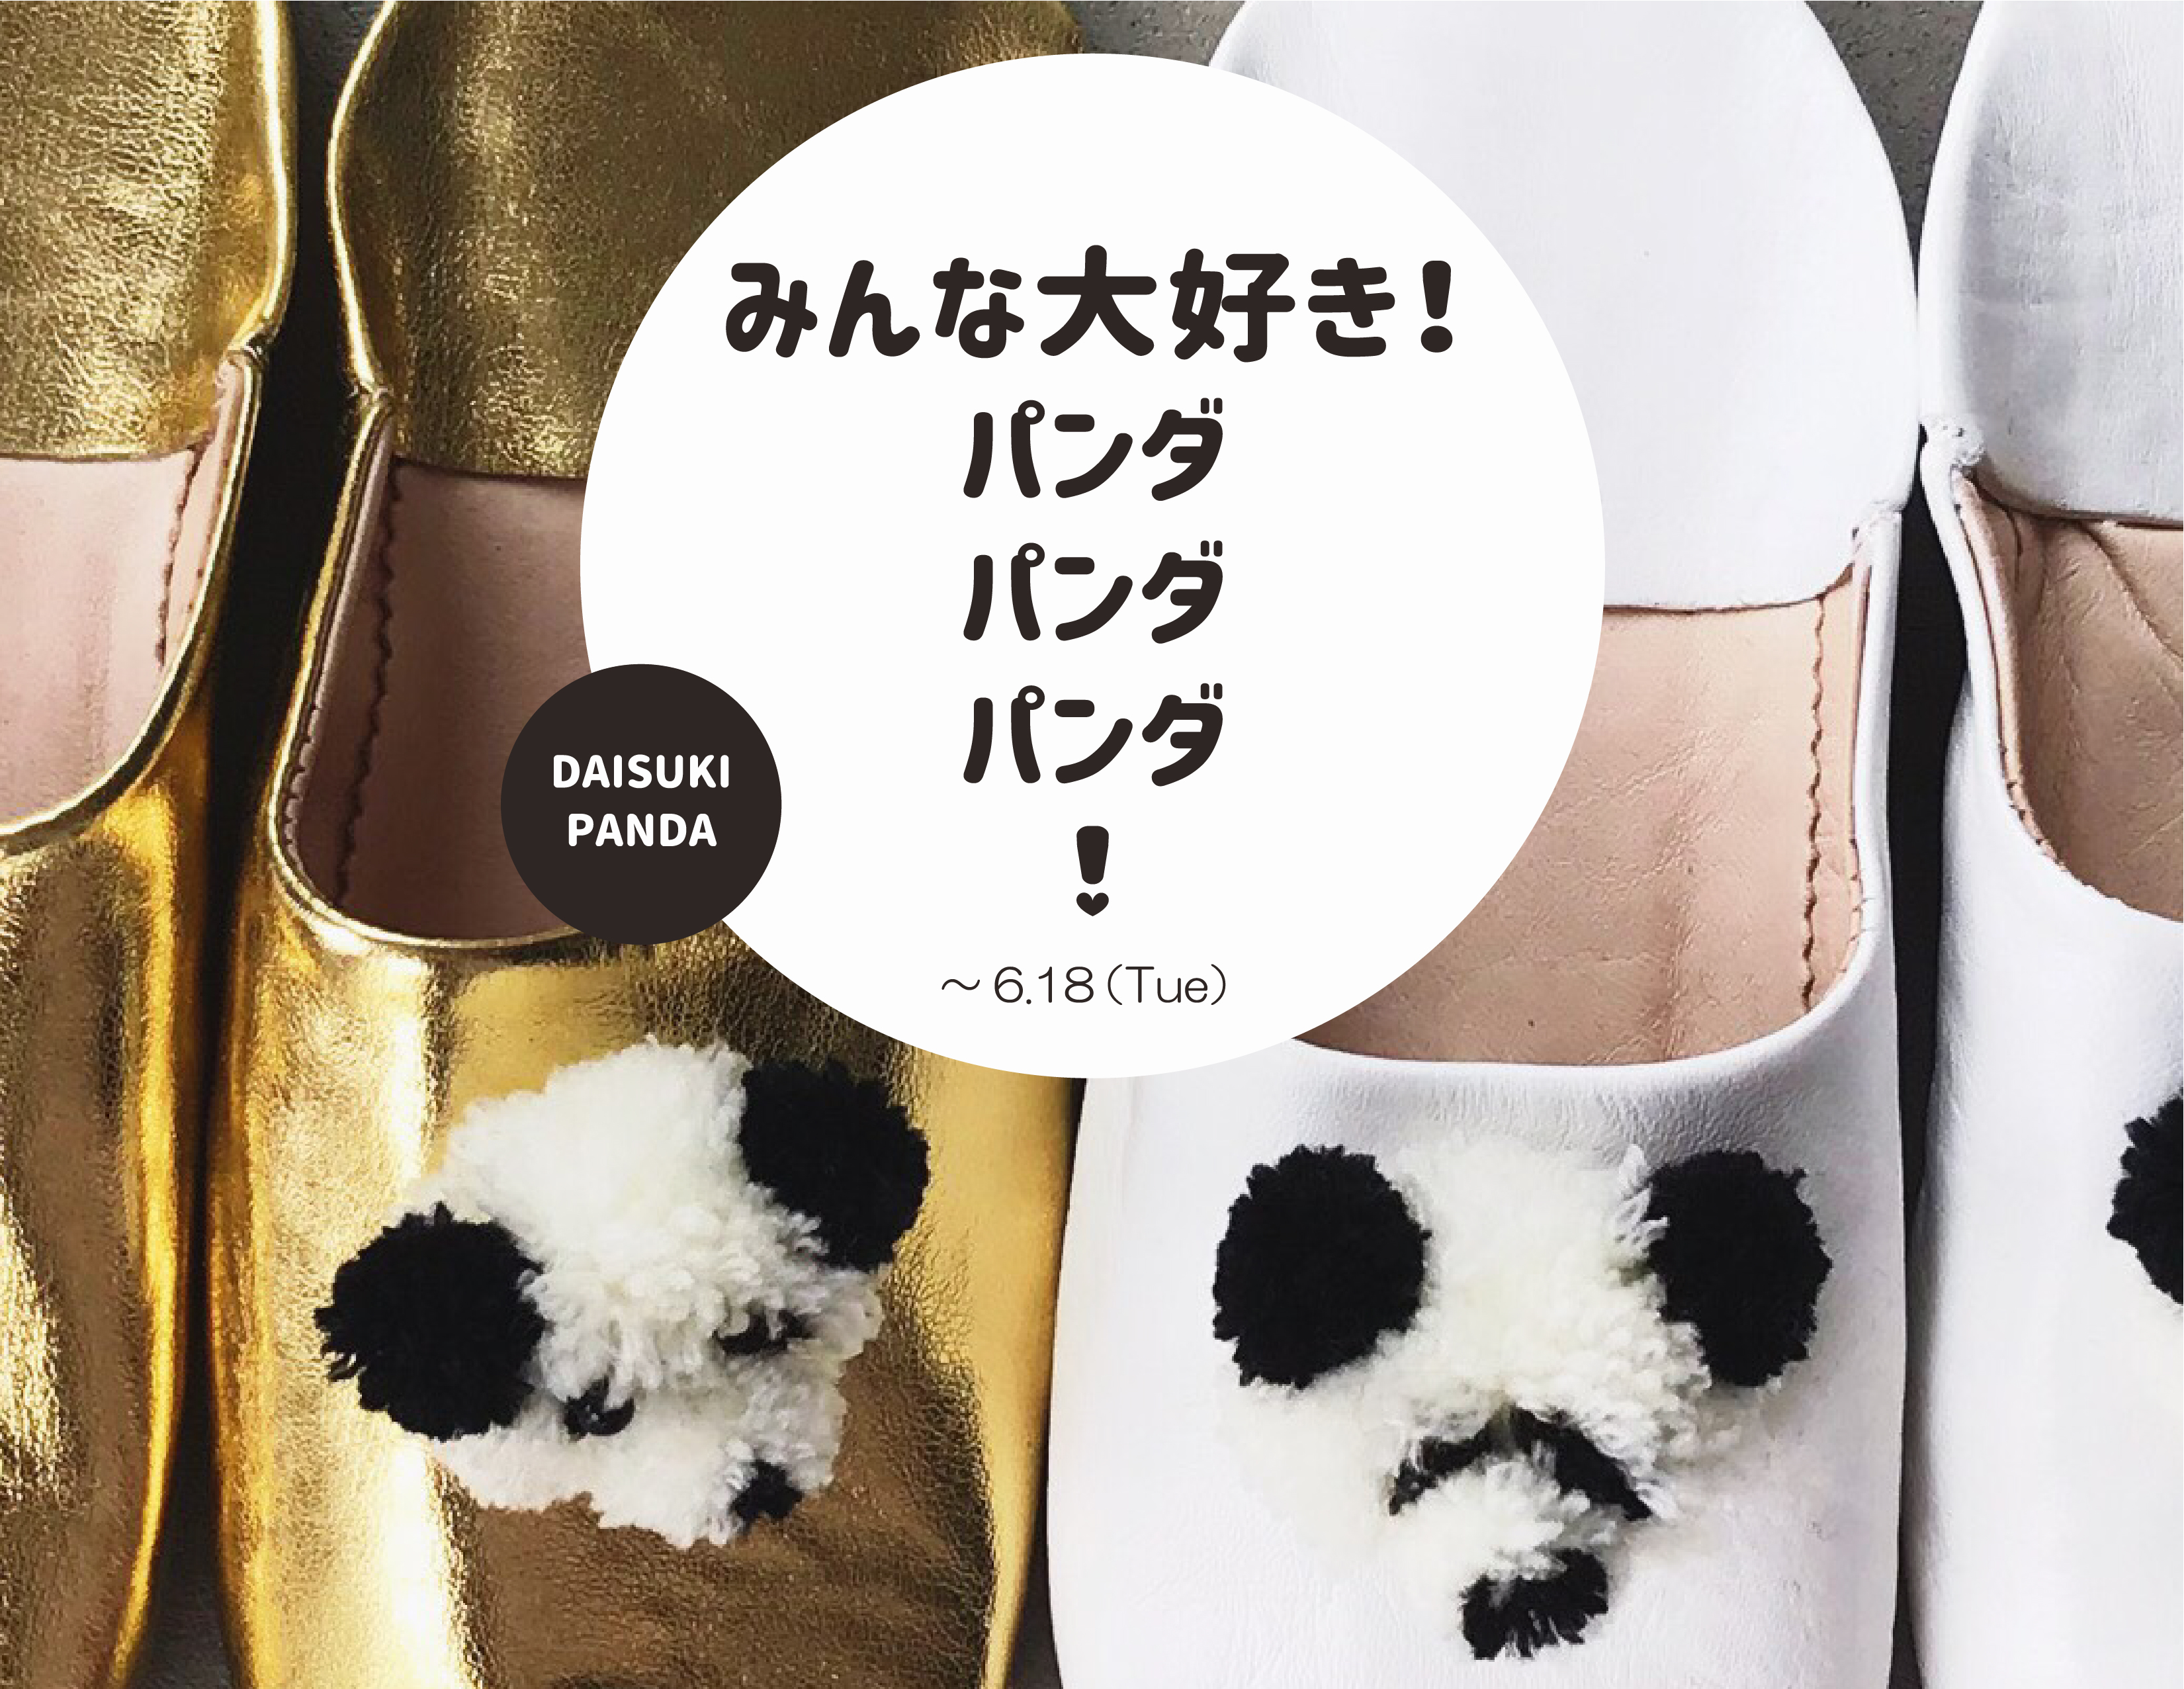 「みんな大好き！パンダ パンダ パンダ!」を伊勢丹新宿店「TOKYO